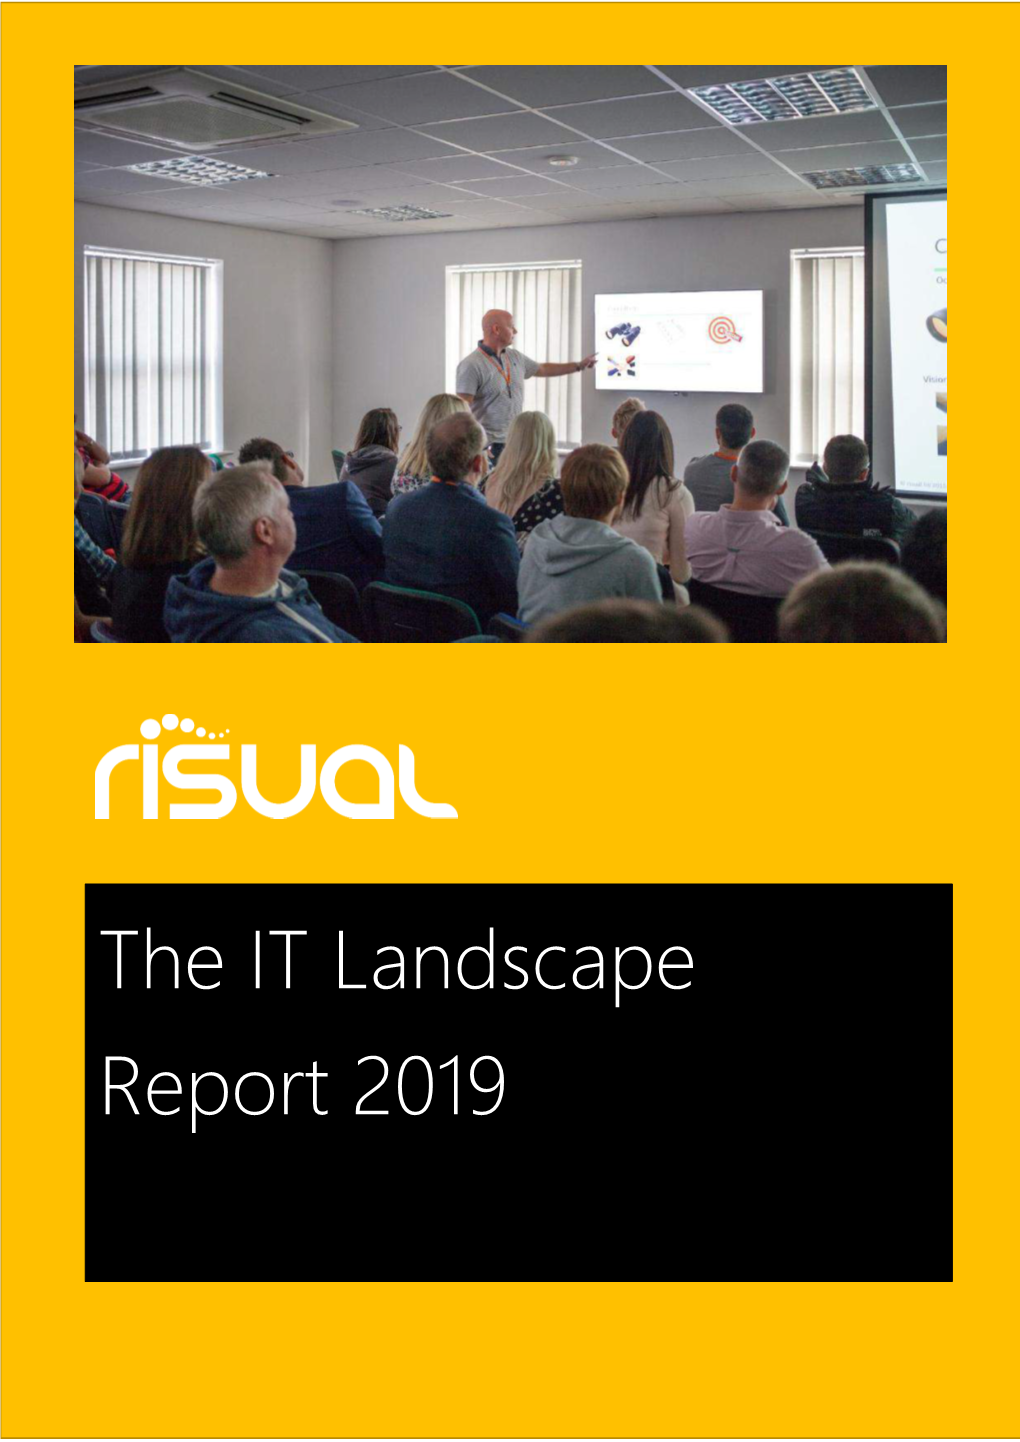 The IT Landscape Report 2019